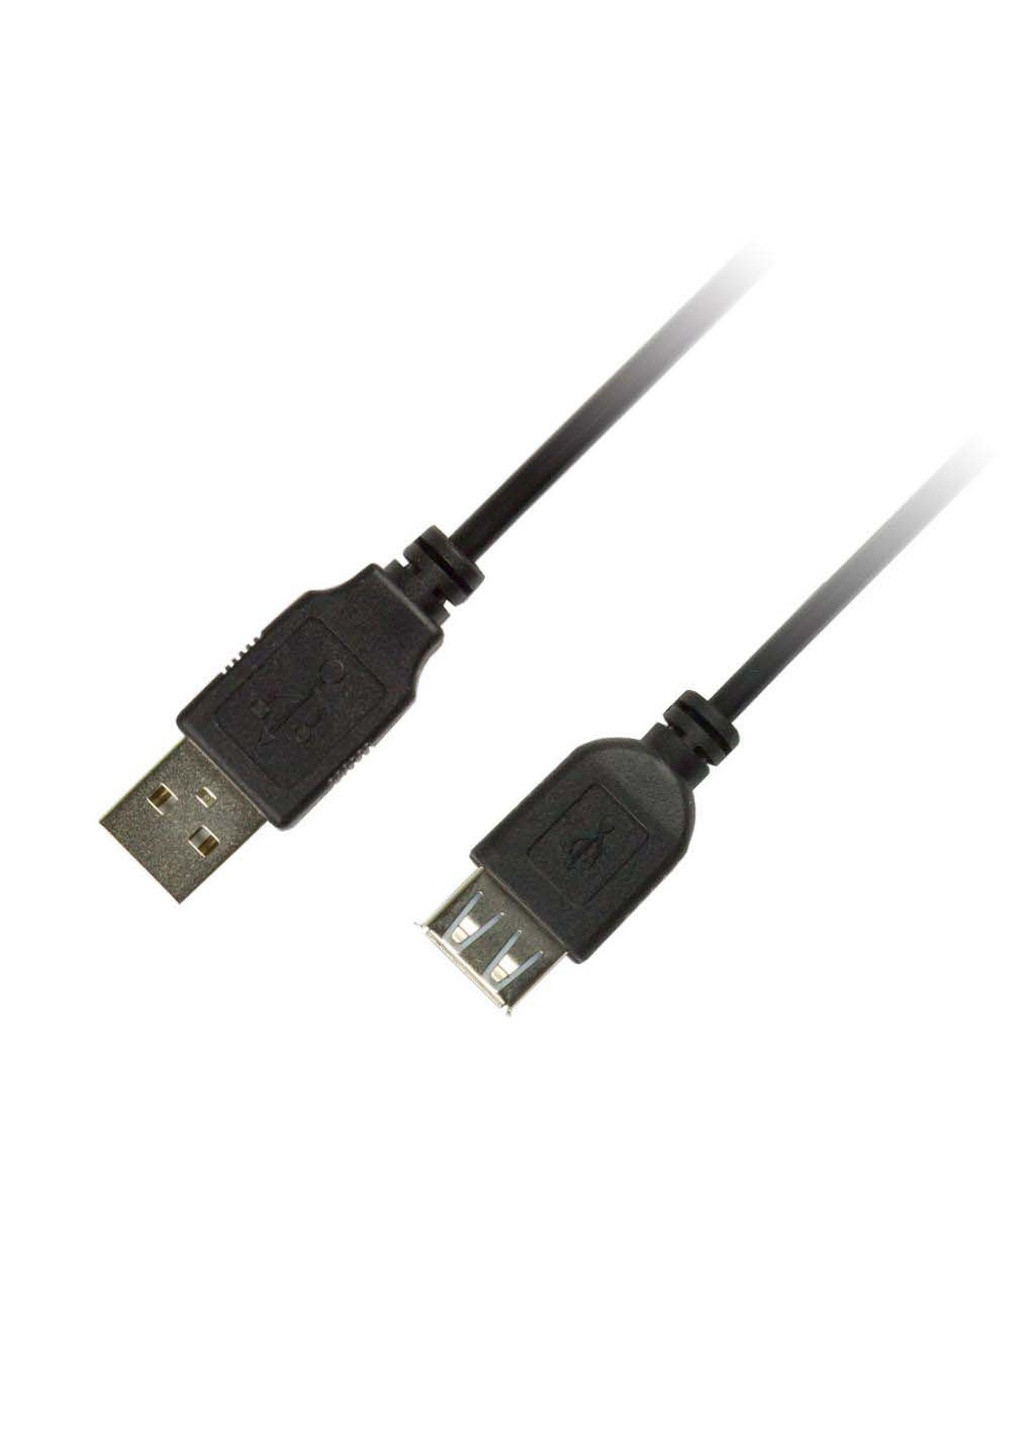 Дата кабель USB 2.0 AM / AF 1.8m (1283126474125) Piko usb 2.0 am/af 1.8m (239381266)